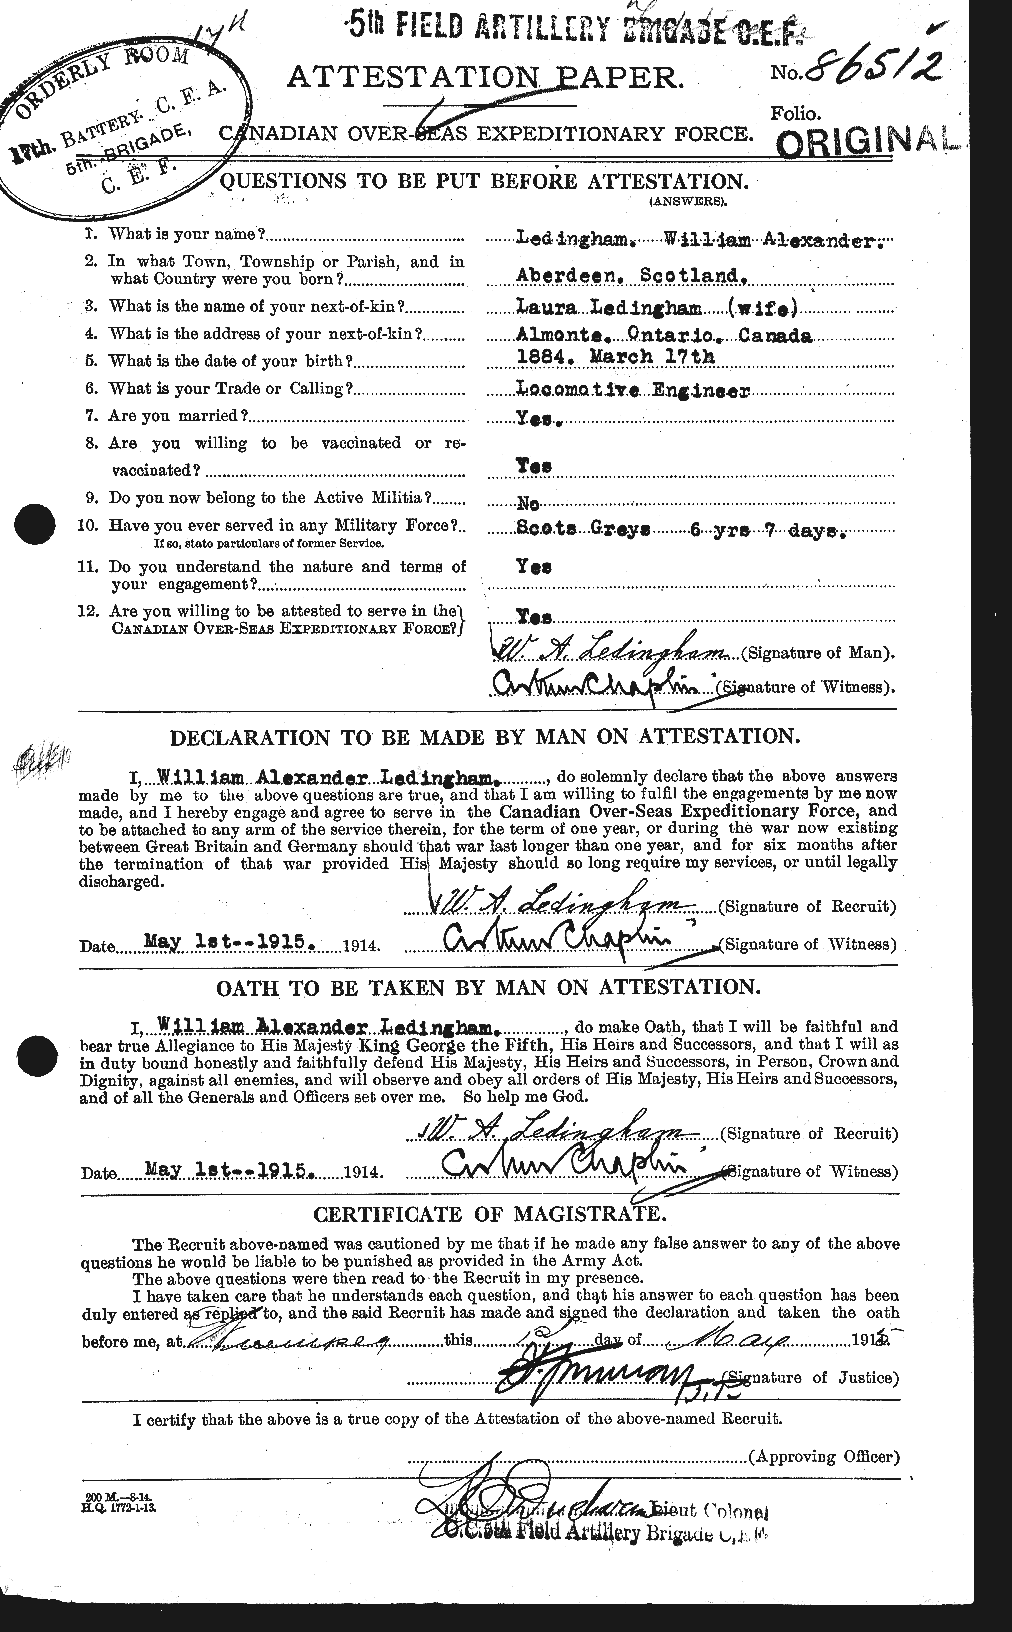 Dossiers du Personnel de la Première Guerre mondiale - CEC 456401a